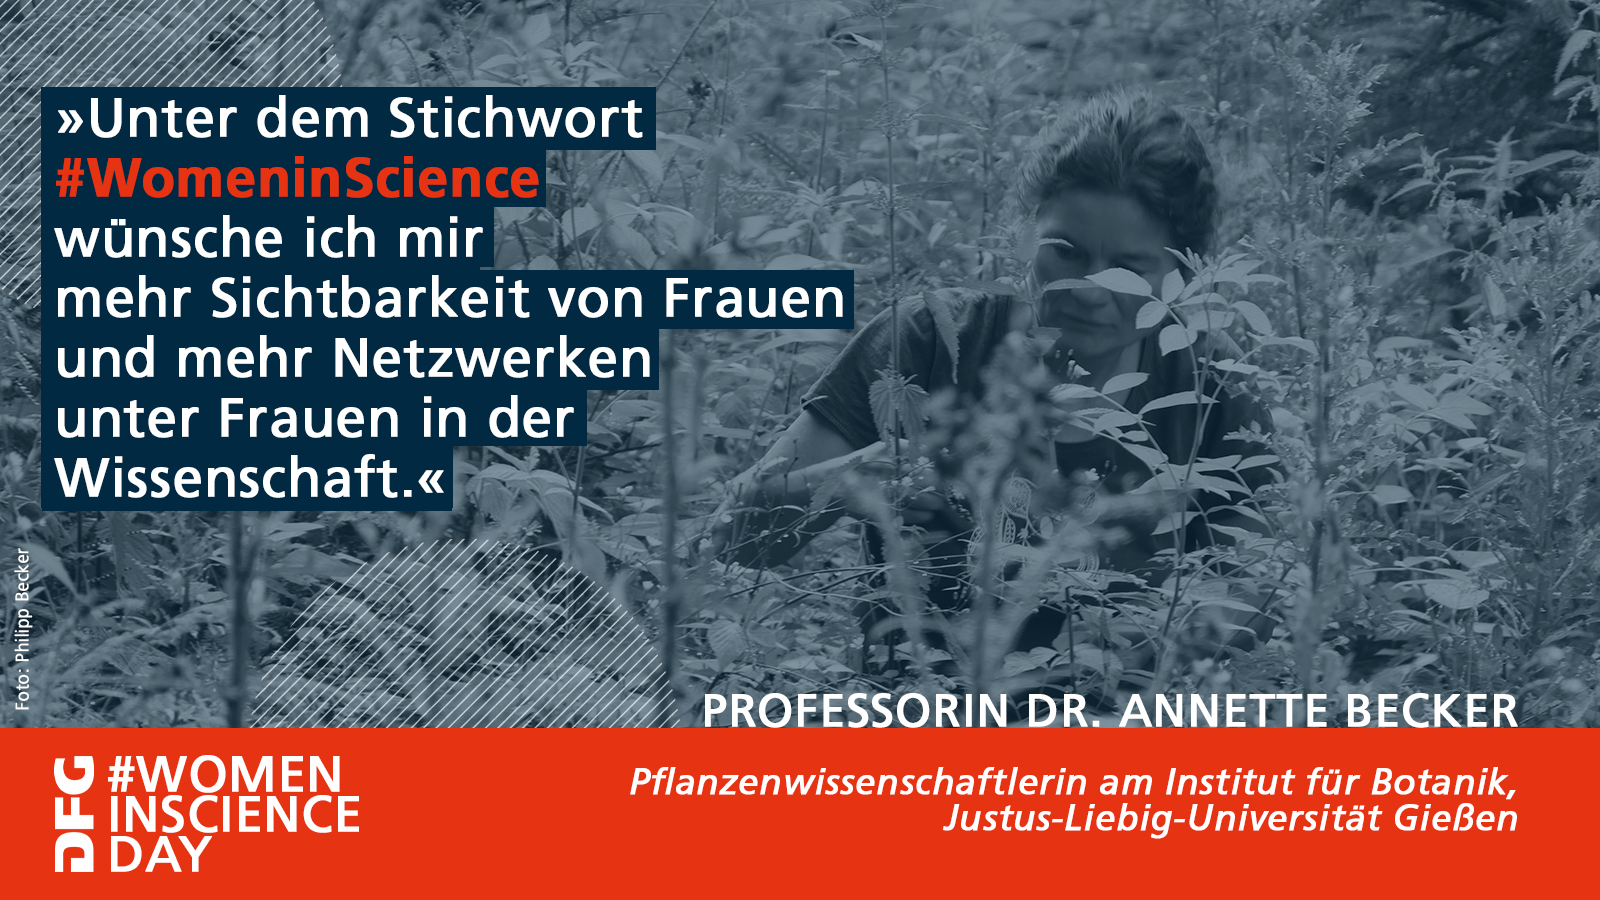 Statement Prof. Dr. Annette Becker